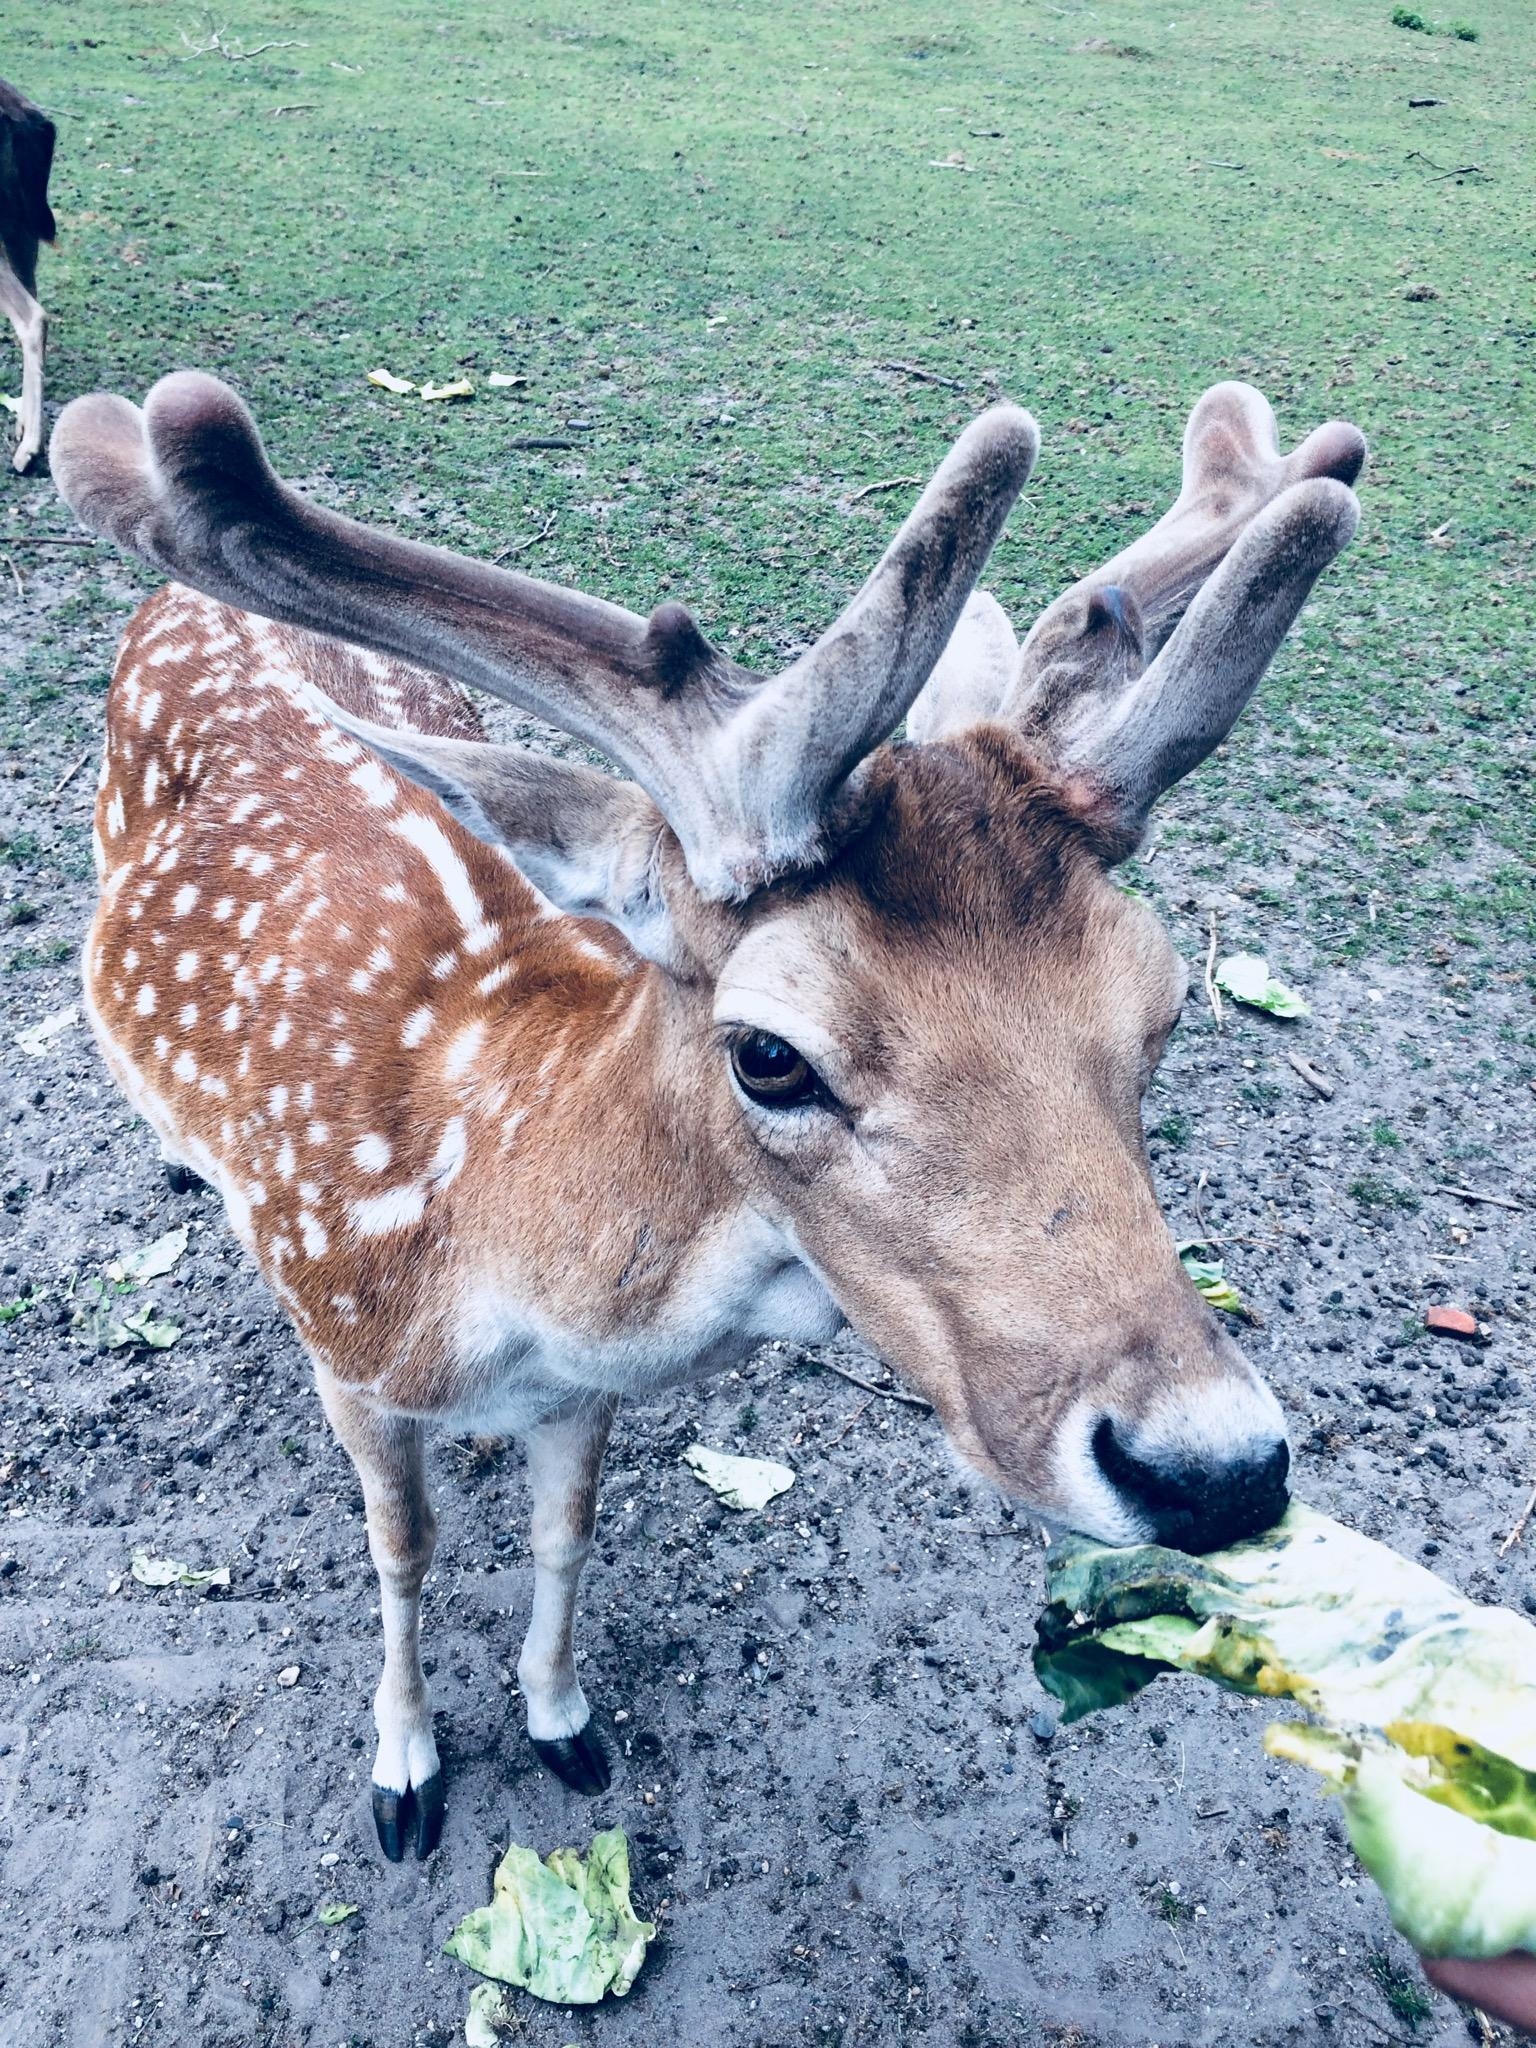 Und noch ein neuer tierischer Freund heute! 🦌 #hirsch #reh #bambi #tiere #wald #wiese #grün #natur